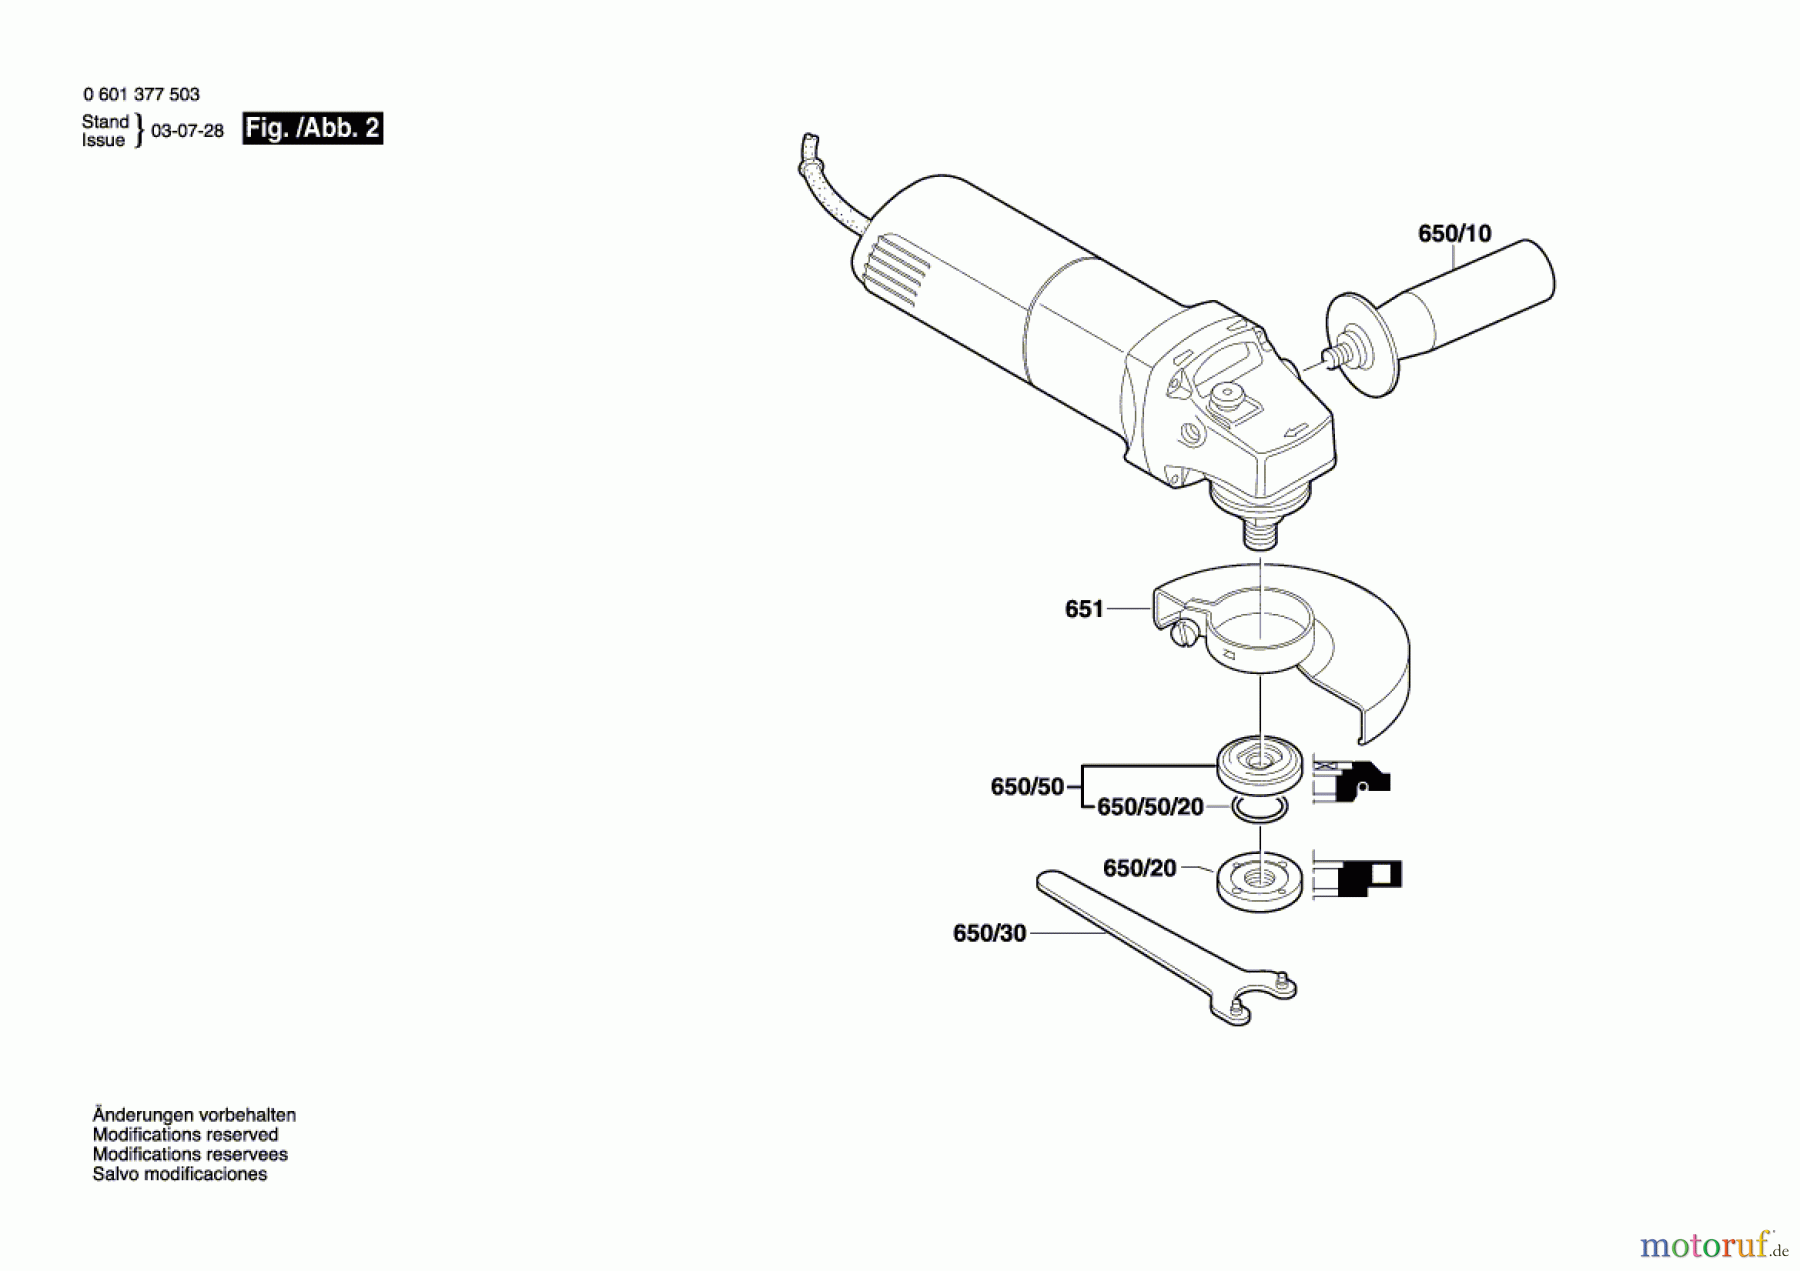  Bosch Werkzeug Winkelschleifer GWS 850 C Seite 2